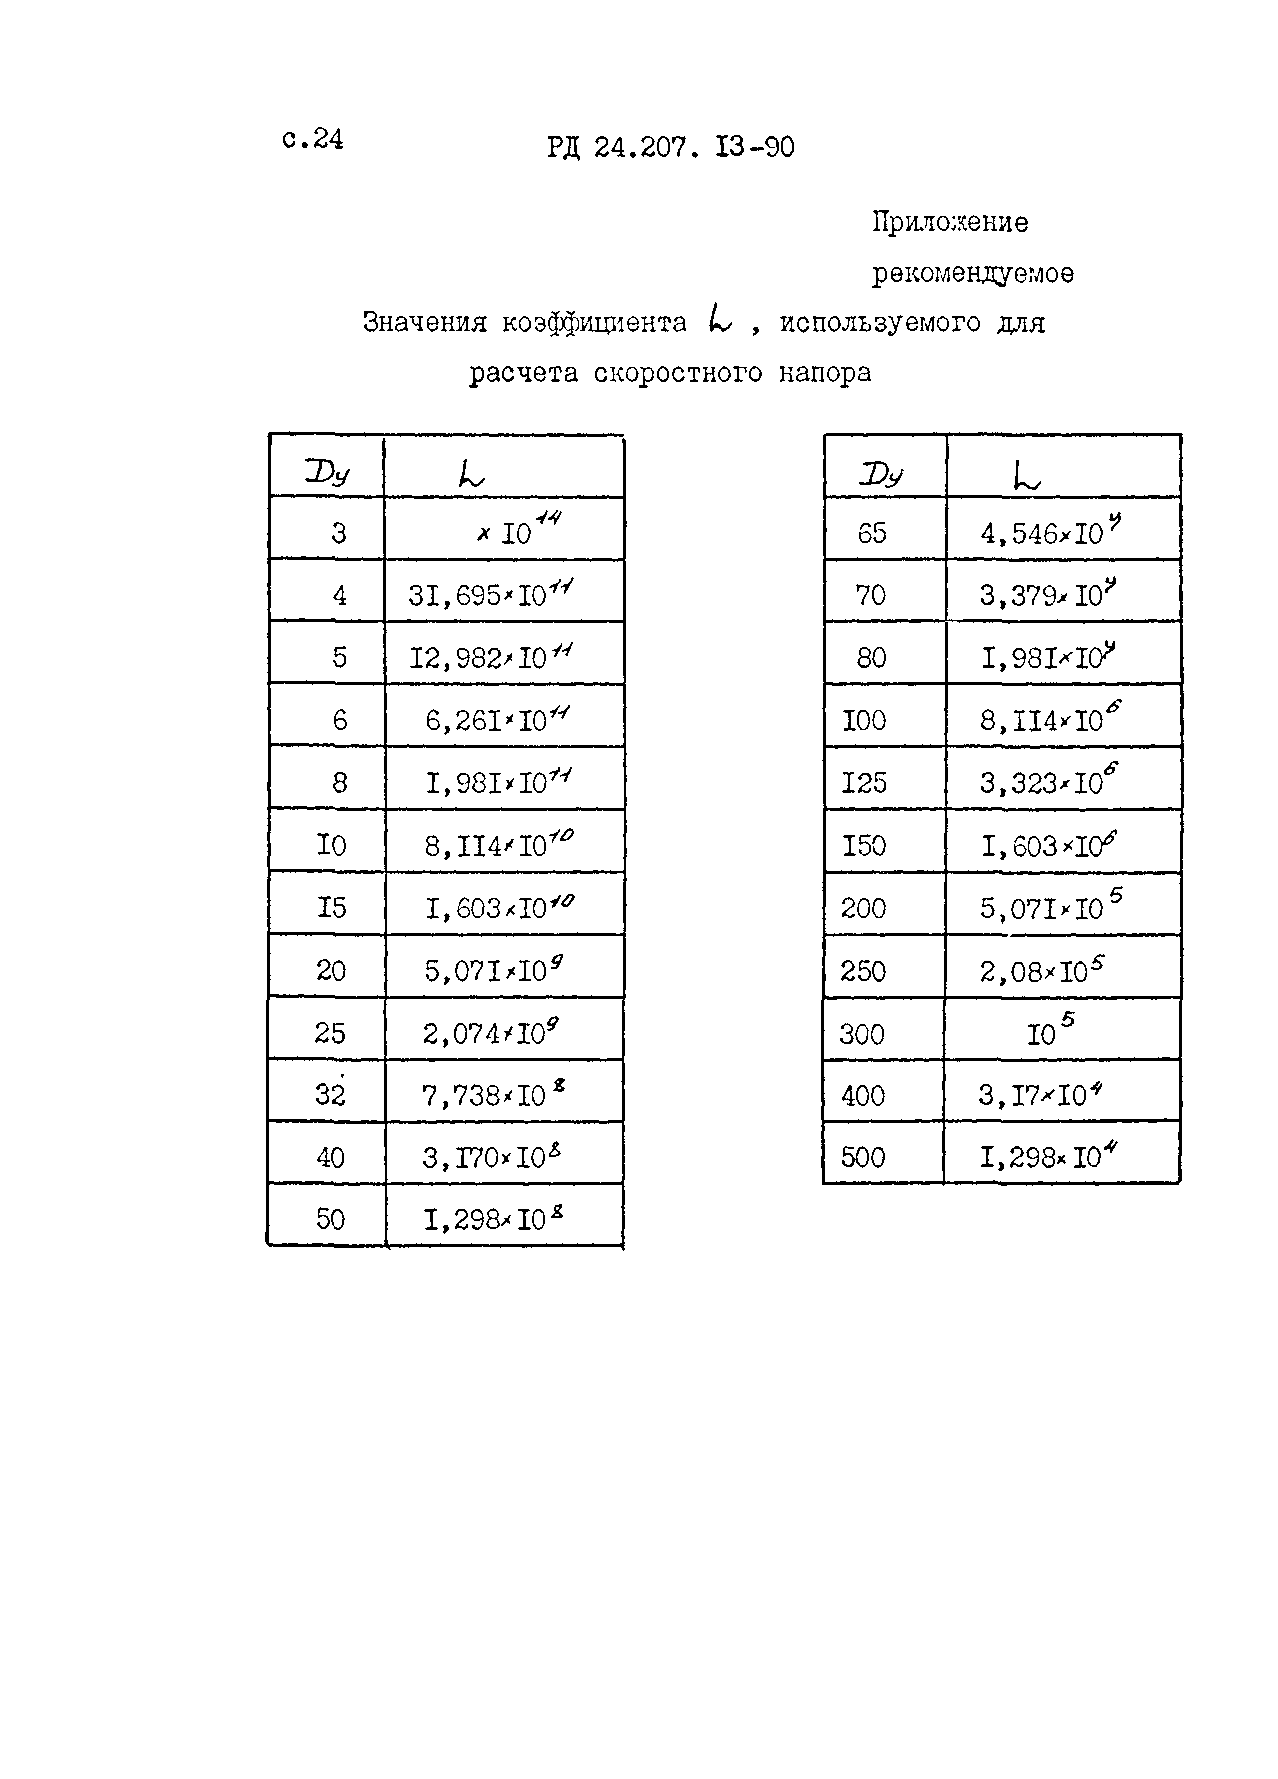 РД 24.207.13-90